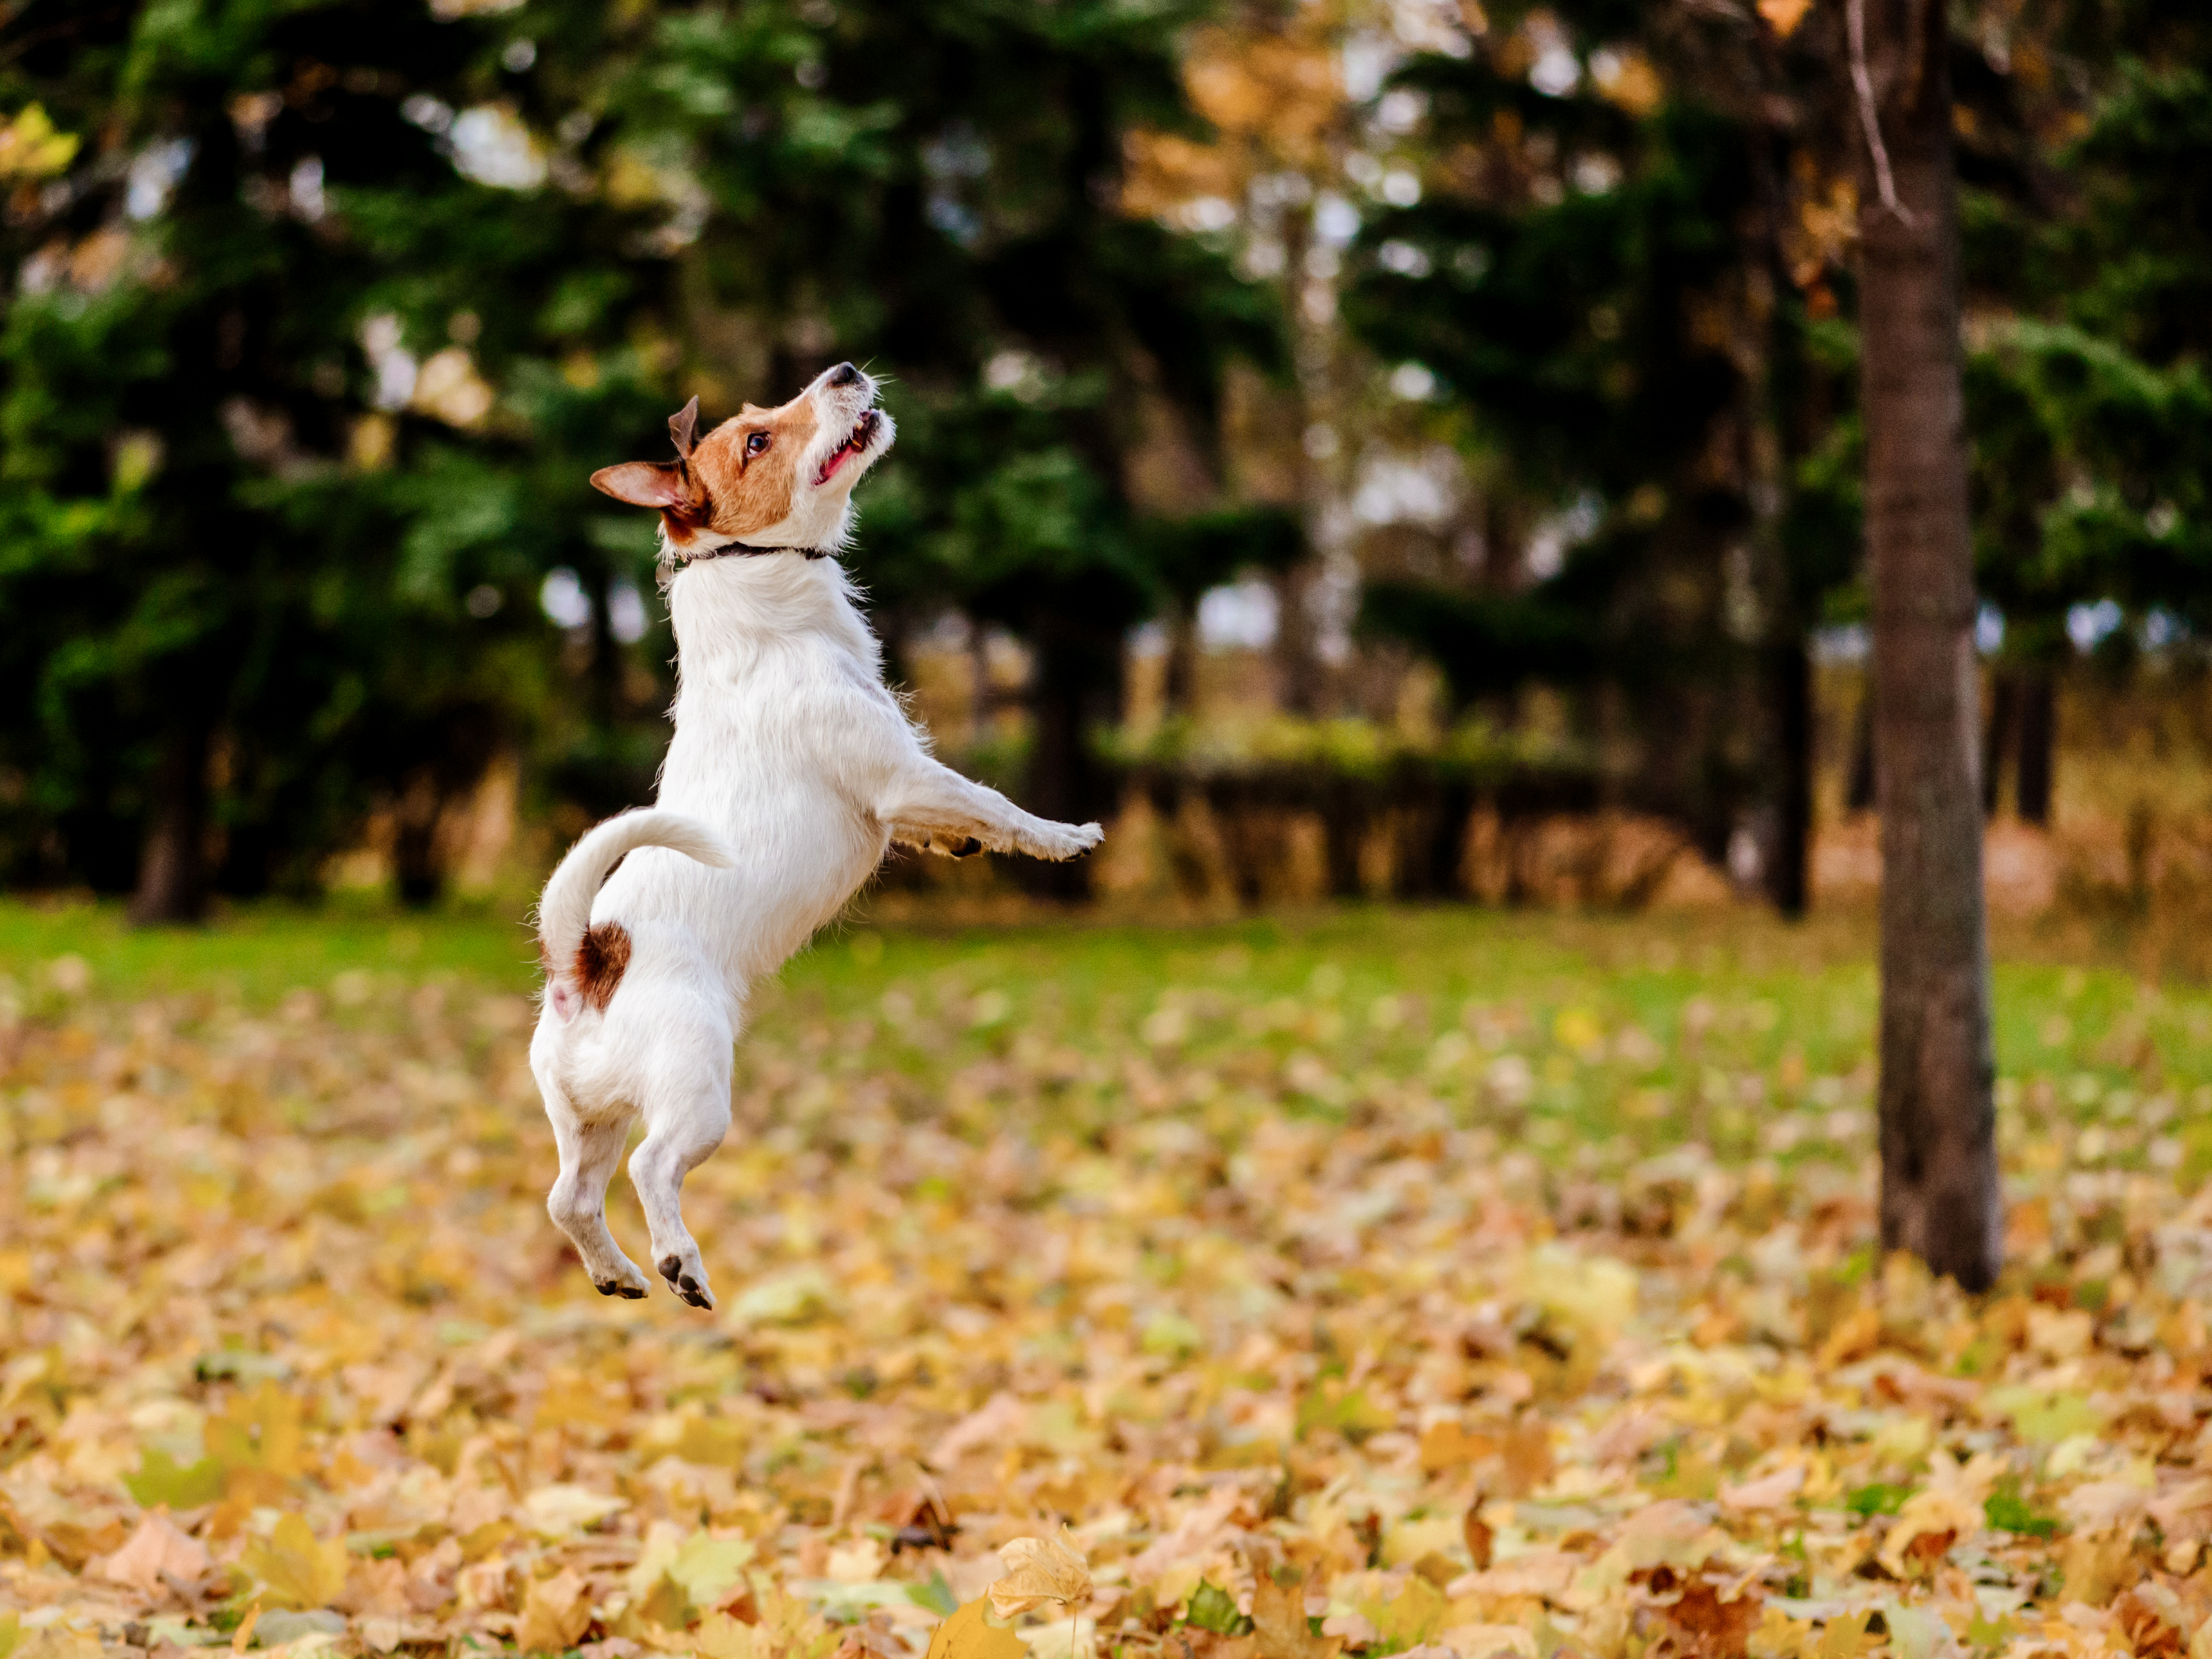 Jack Russell terrier adulto a saltar num parque, rodeado de folhas caídas